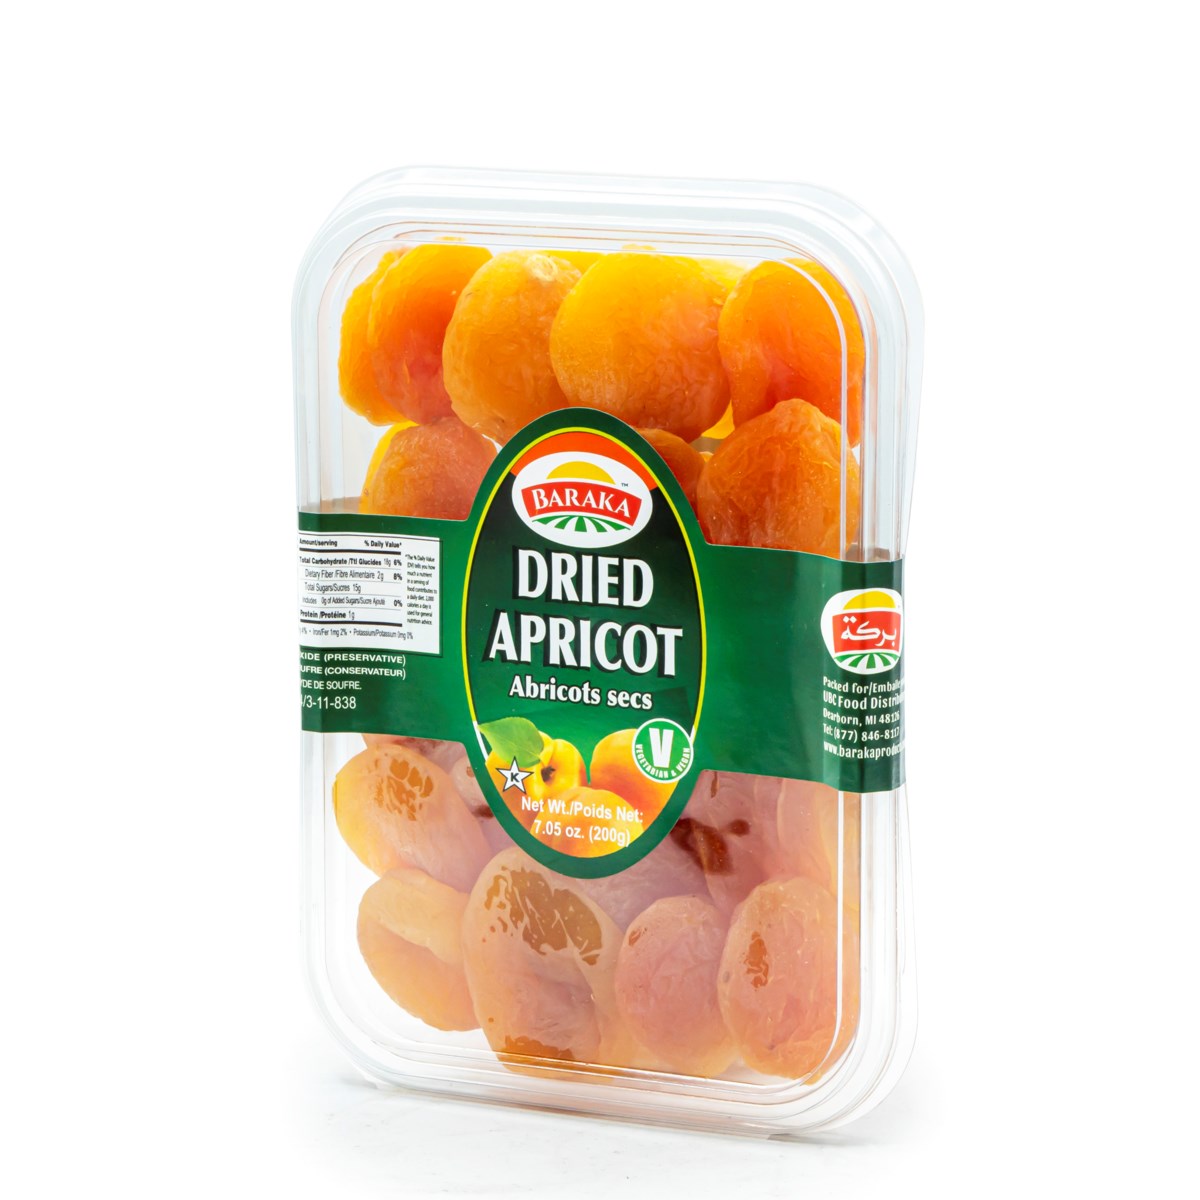 Dried Apricot "Baraka" 200g * 40